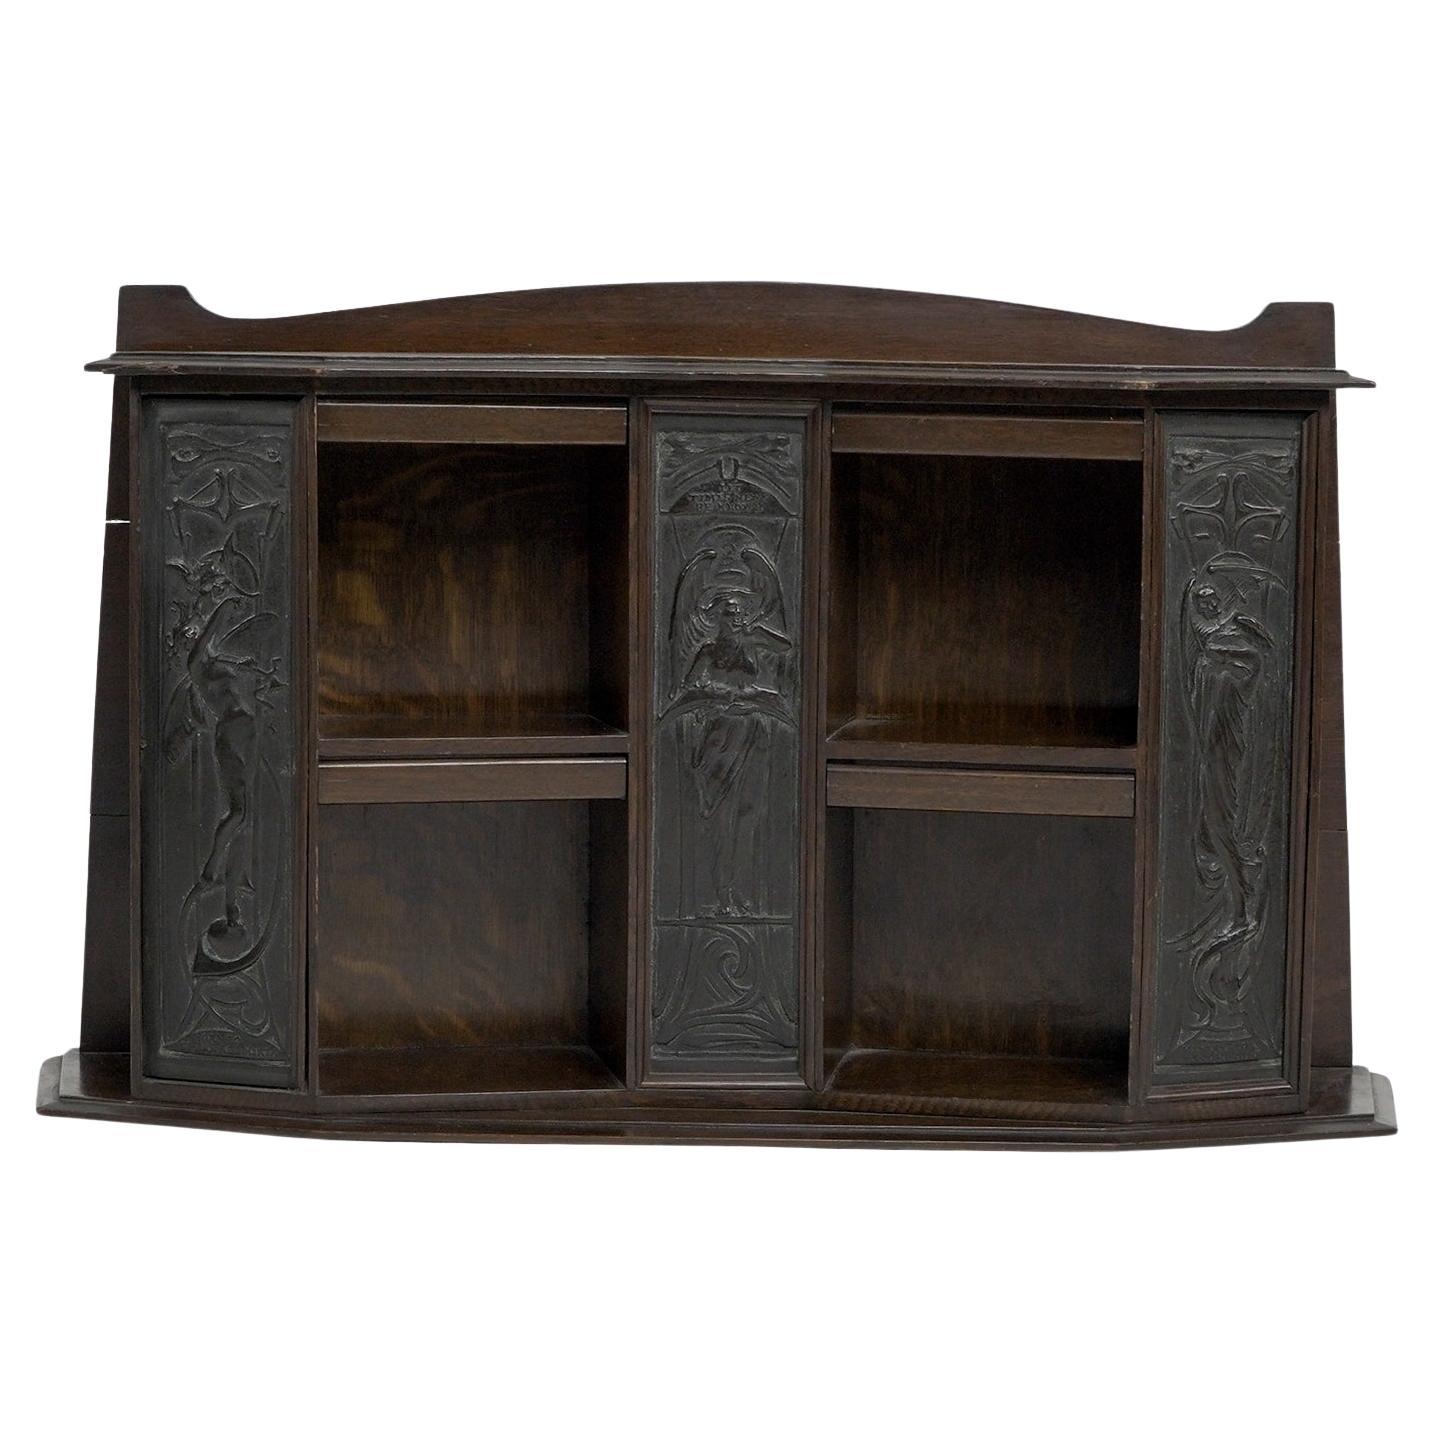 Arts and Crafts oak desk top bookcase with 3 bronze Art Nouveau period plaques. For Sale